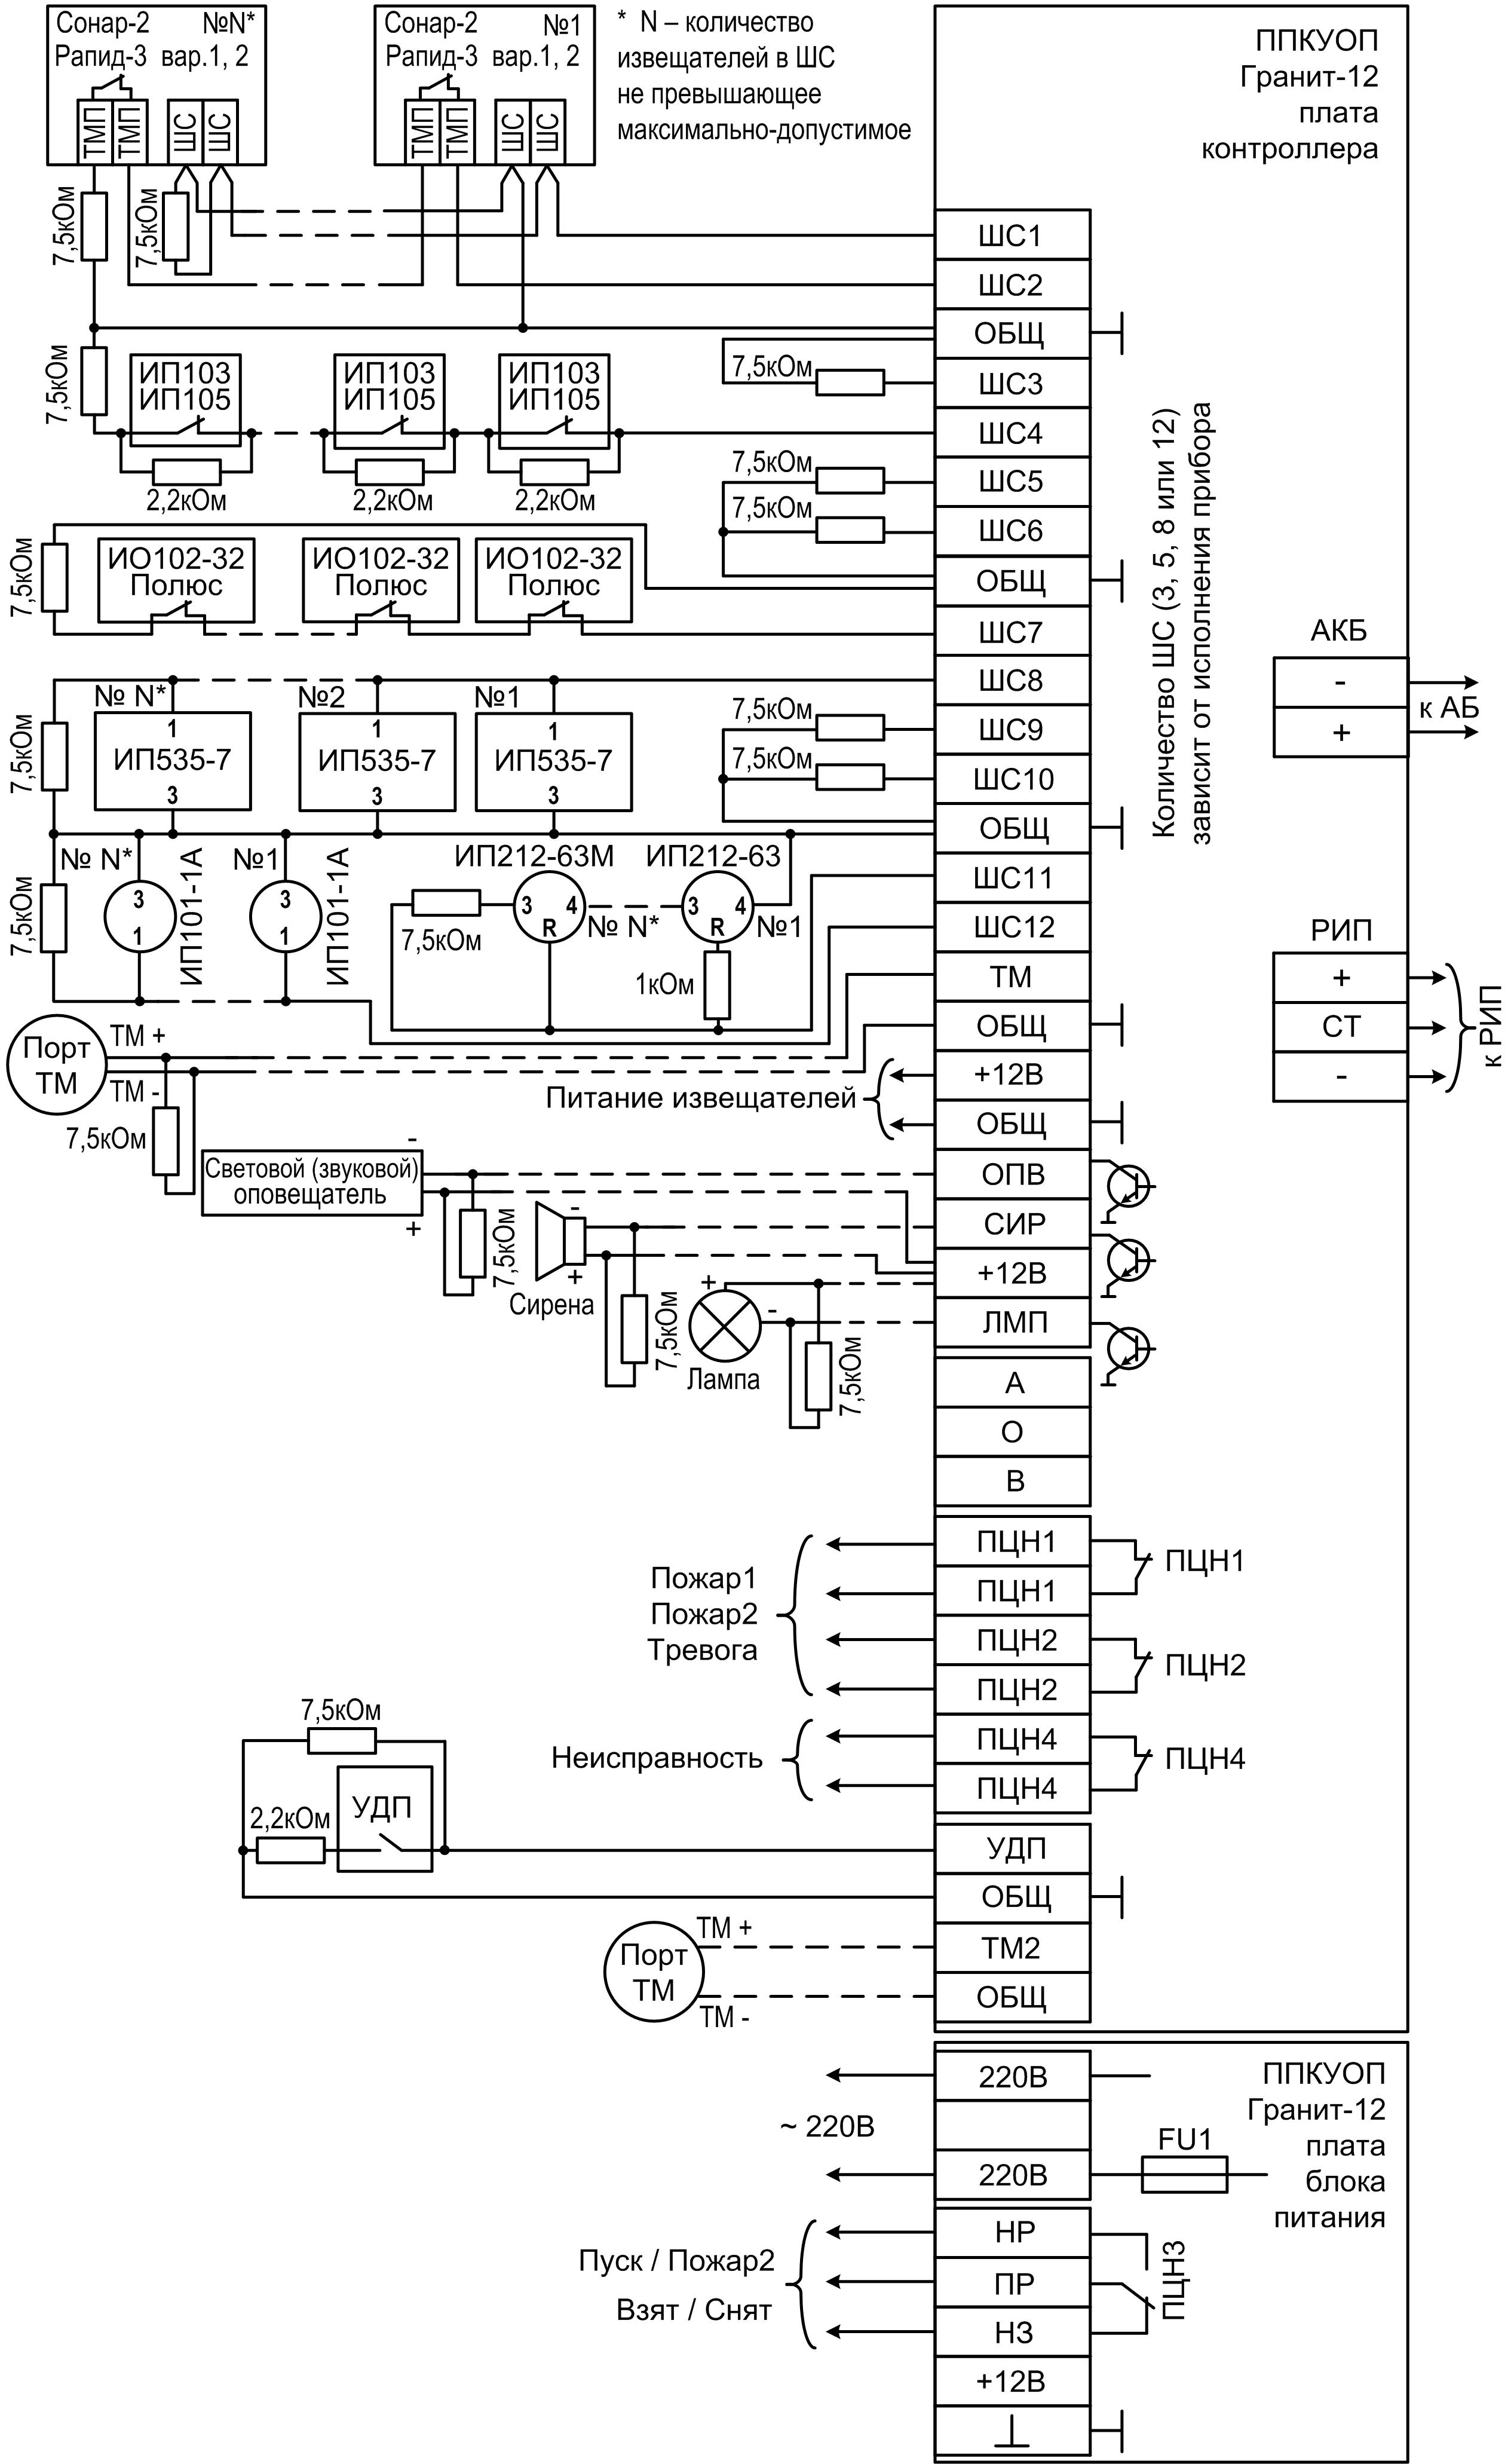 Схема подключения Гранит-5